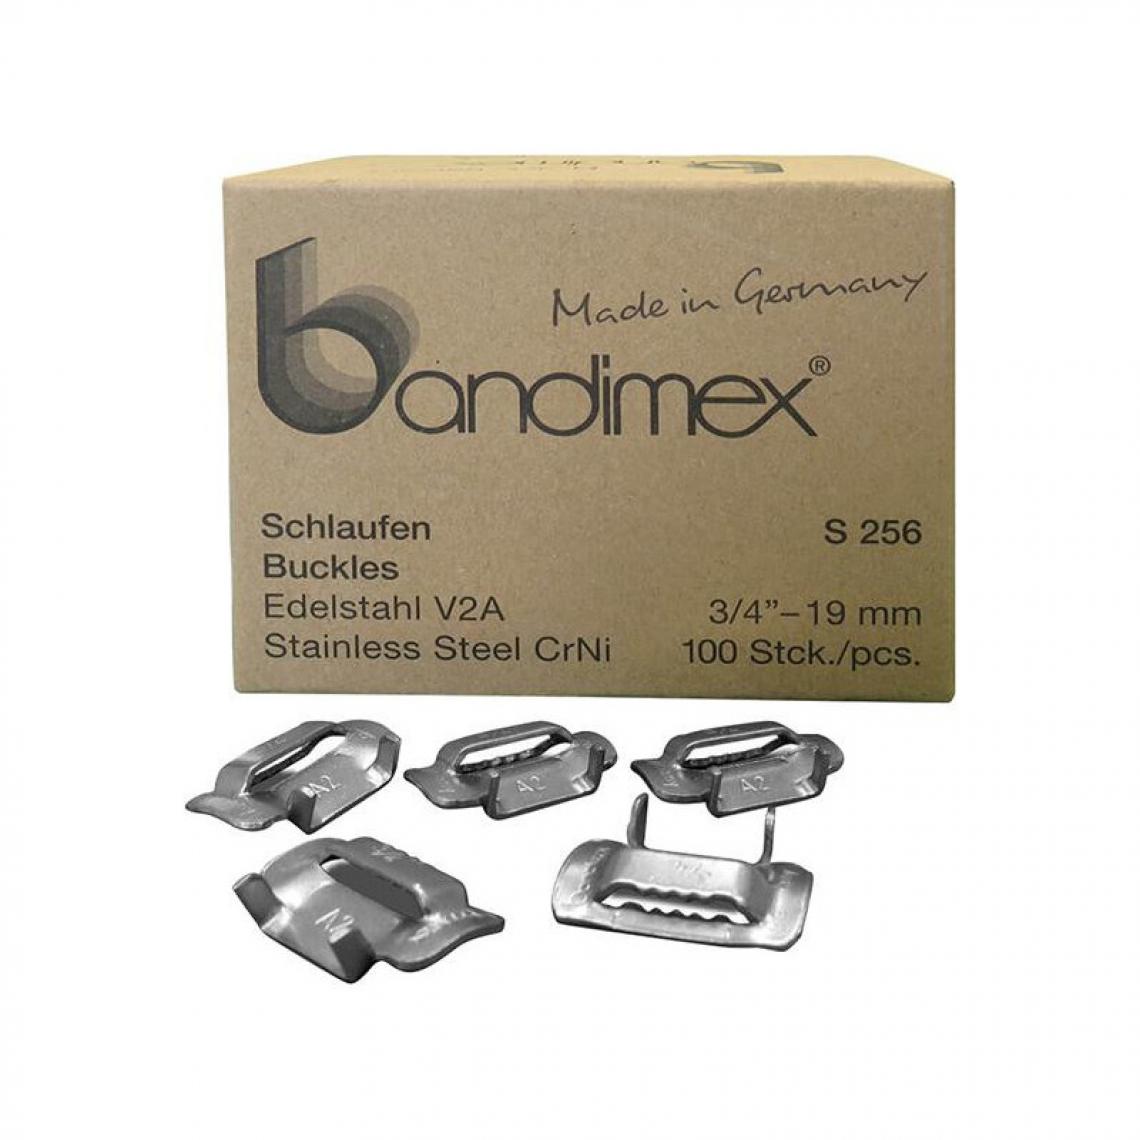 marque generique - Boucles cerclages 1/2 V2A- acier inoxydable Pack a 100 Unités Bandimex - Adhésif d'emballage